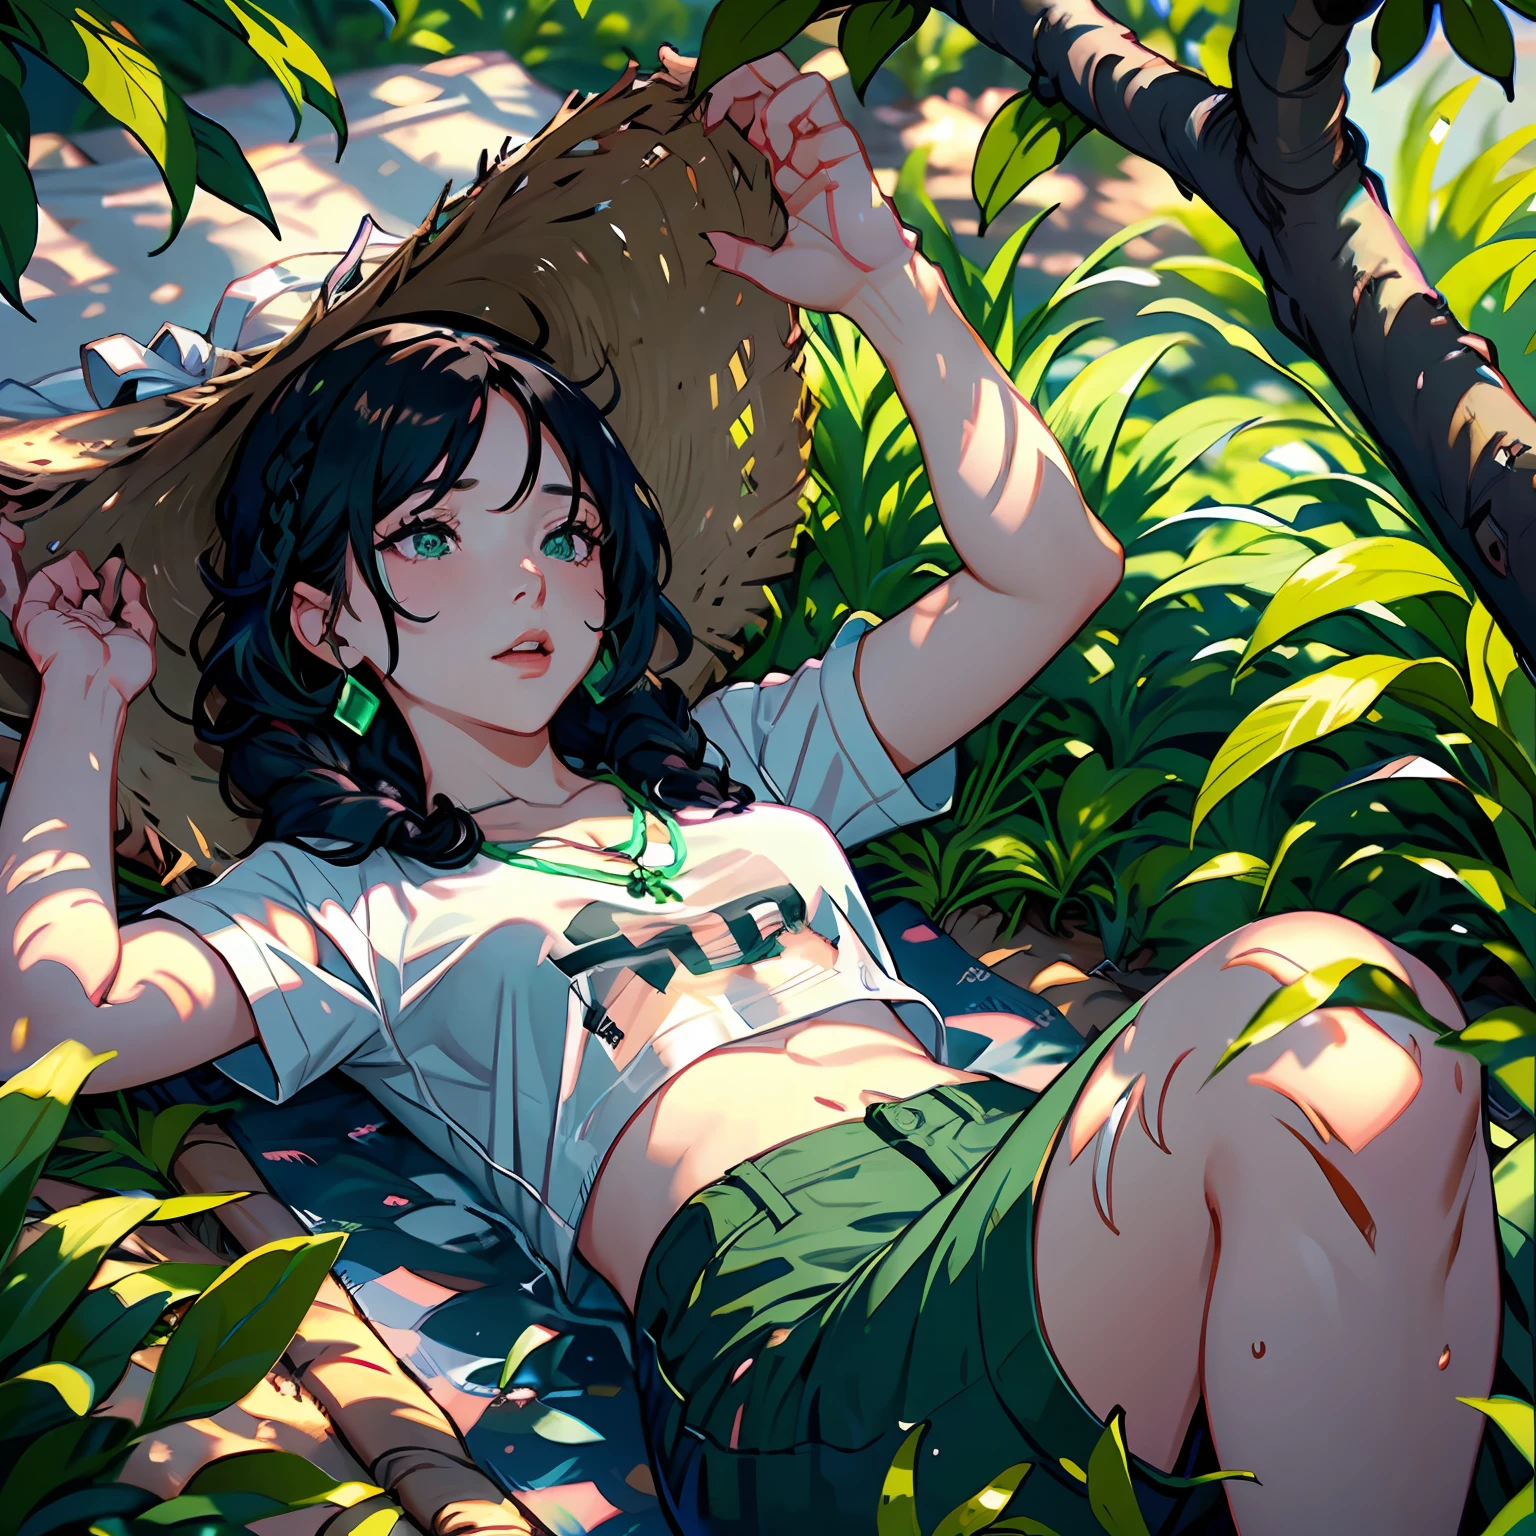 一名婦女昏迷不醒地躺在乾草床上, 在一棵陰涼的樹下, 她的黑髮整齊地編成辮子, 穿著白色T恤和粉紅色格子褲, 飾有美麗的翠綠項鍊.